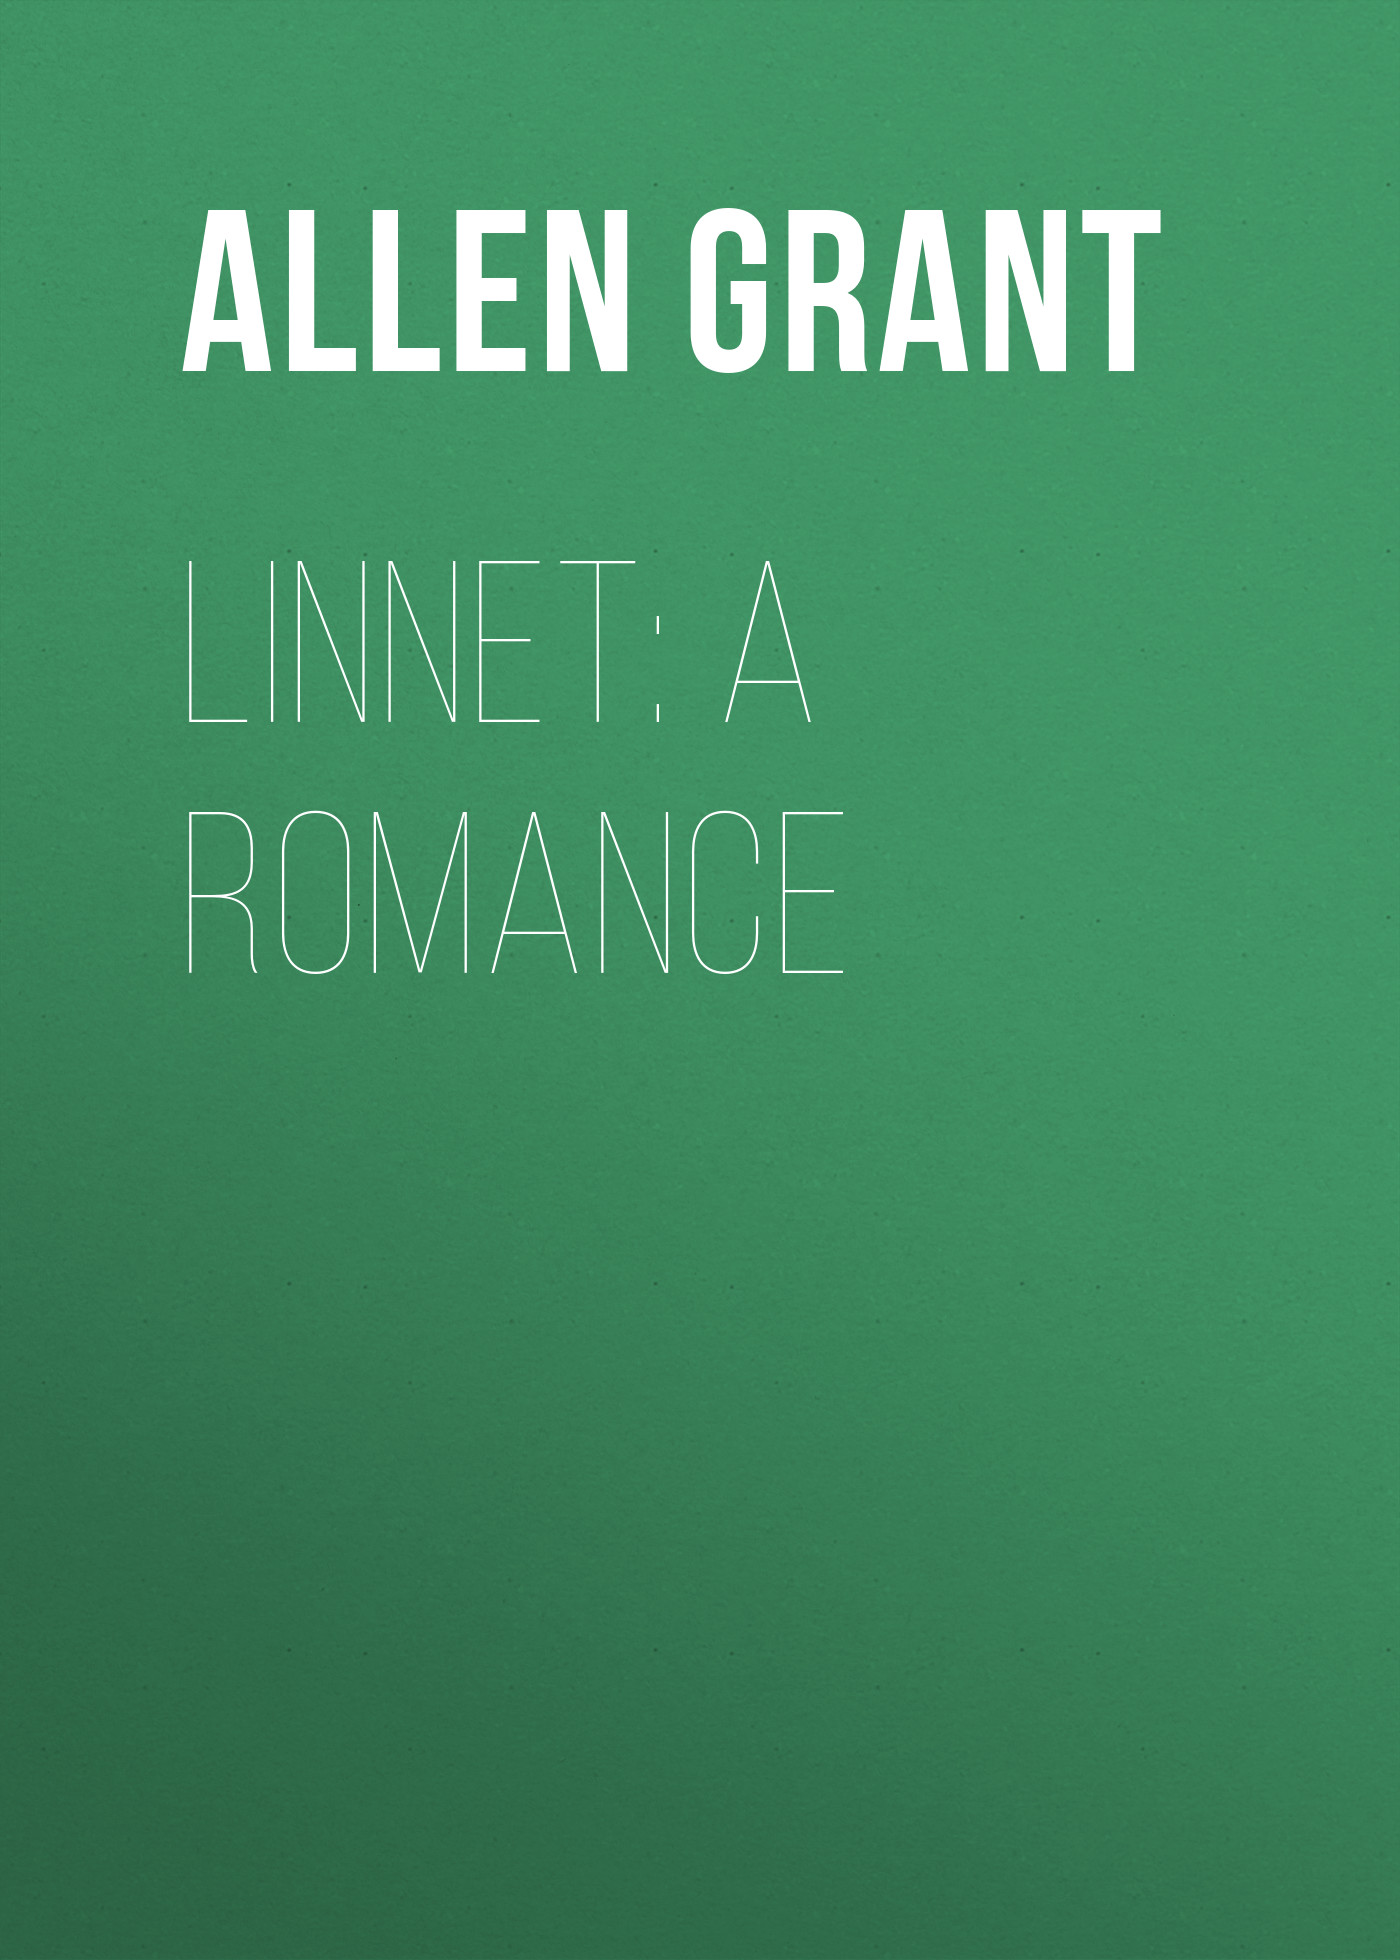 Книга Linnet: A Romance из серии , созданная Grant Allen, может относится к жанру Зарубежная классика. Стоимость электронной книги Linnet: A Romance с идентификатором 23157947 составляет 0 руб.